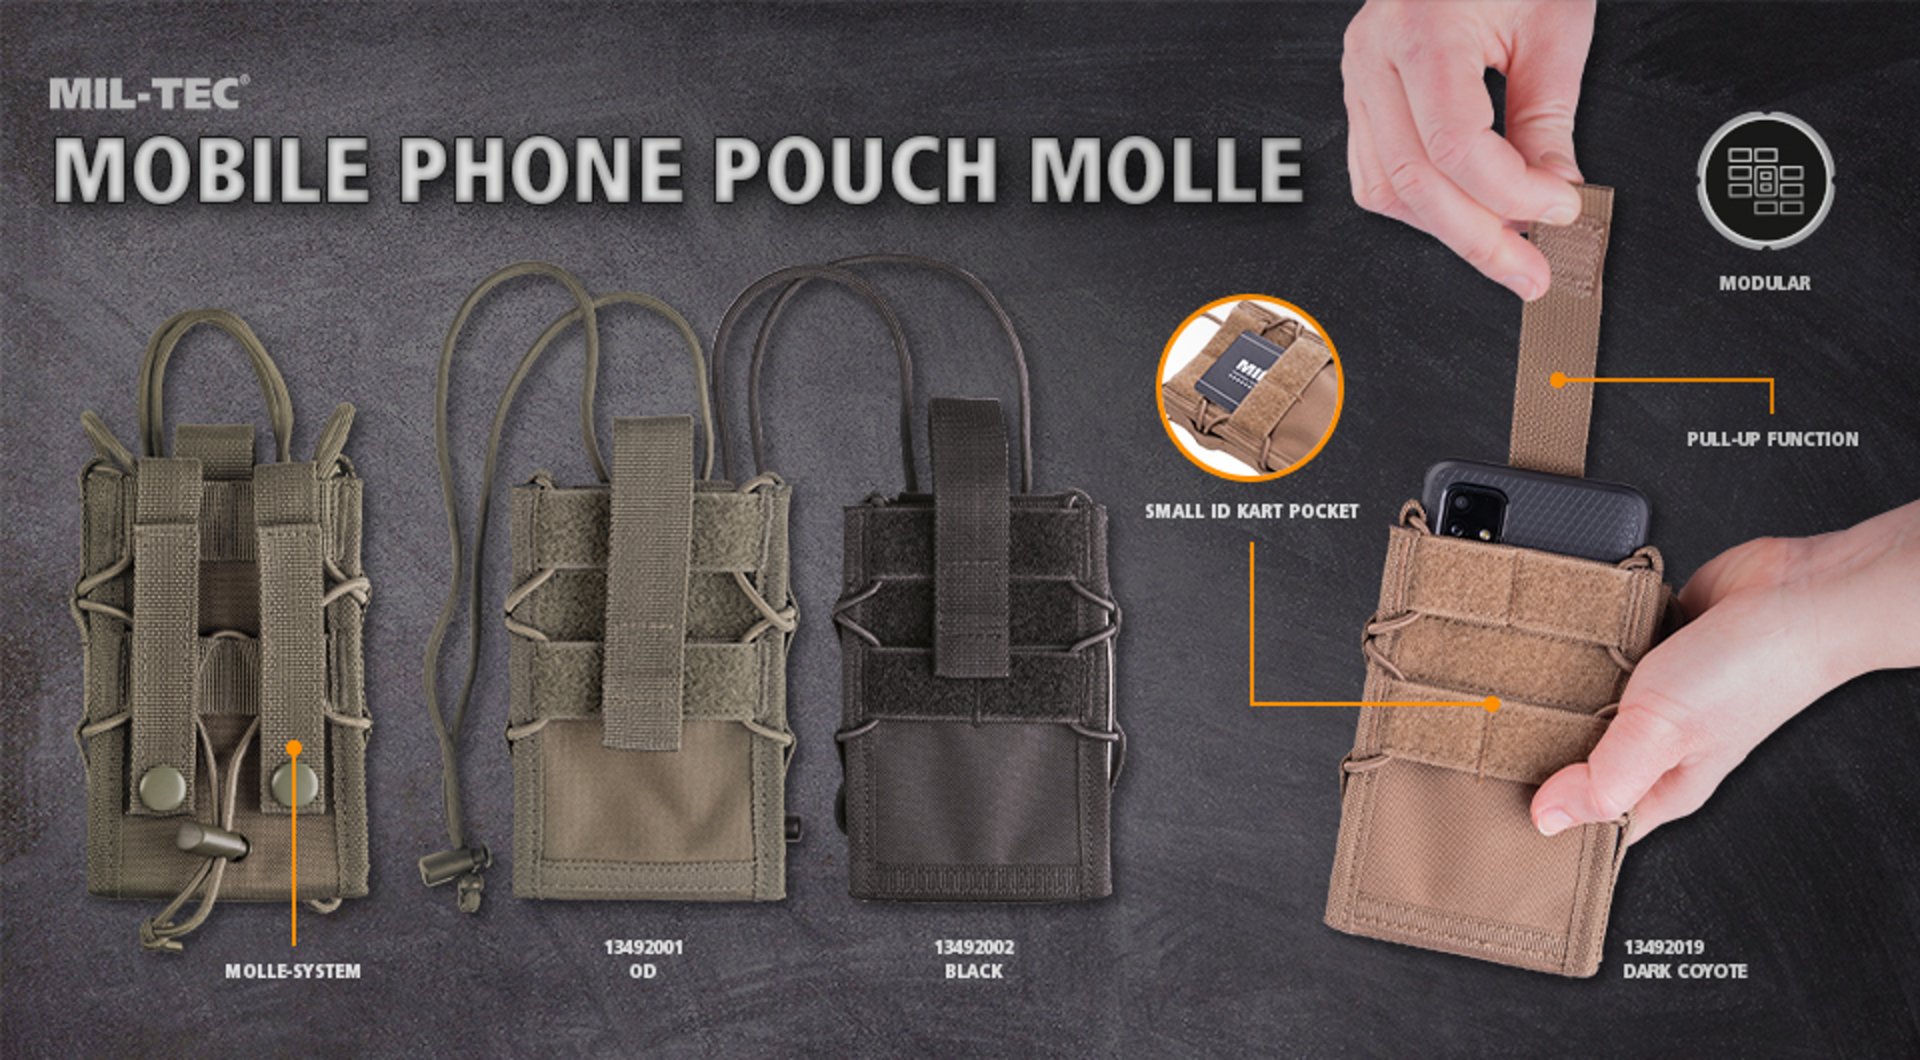 Zaščitite vaš mobilni telefon s praktično MOLLE torbico. Torbica je idealna za dimenzije 9.3 x 2.2 x 14.5 cm in se enostavno pritrdi na vojaške nahrbtnike in nosilne sisteme. Zagotovite si optimalno zaščito, enostaven dostop in brezskrbno uporabo mobilneg